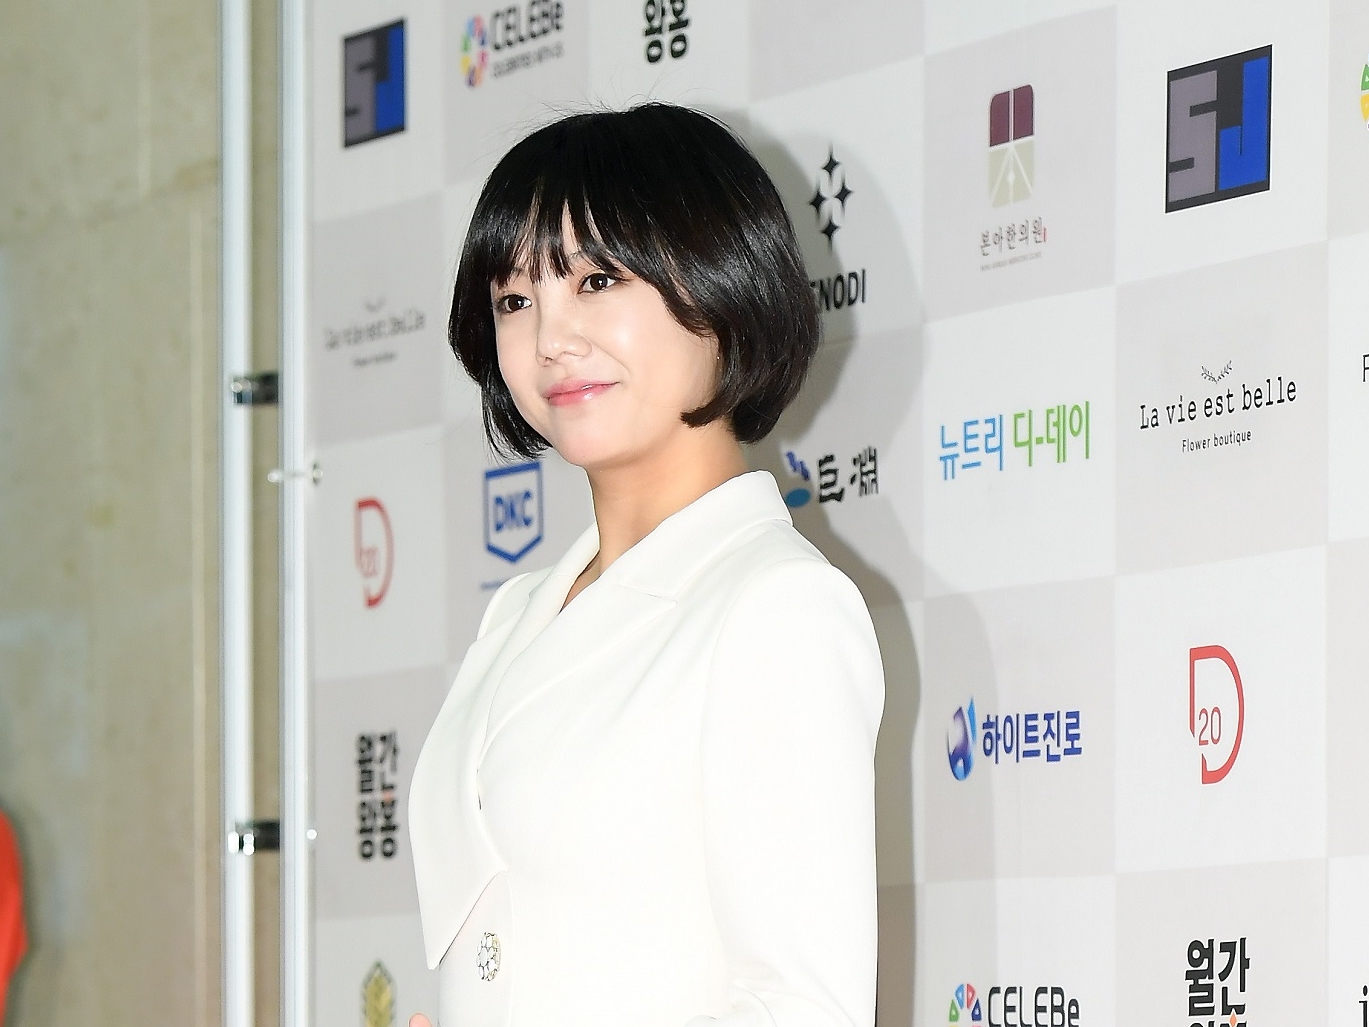 「女神が帰ってきた」“鼻が崩れた”韓国女優、手術後のドアップ写真で復活した美貌を証明【PHOTO】